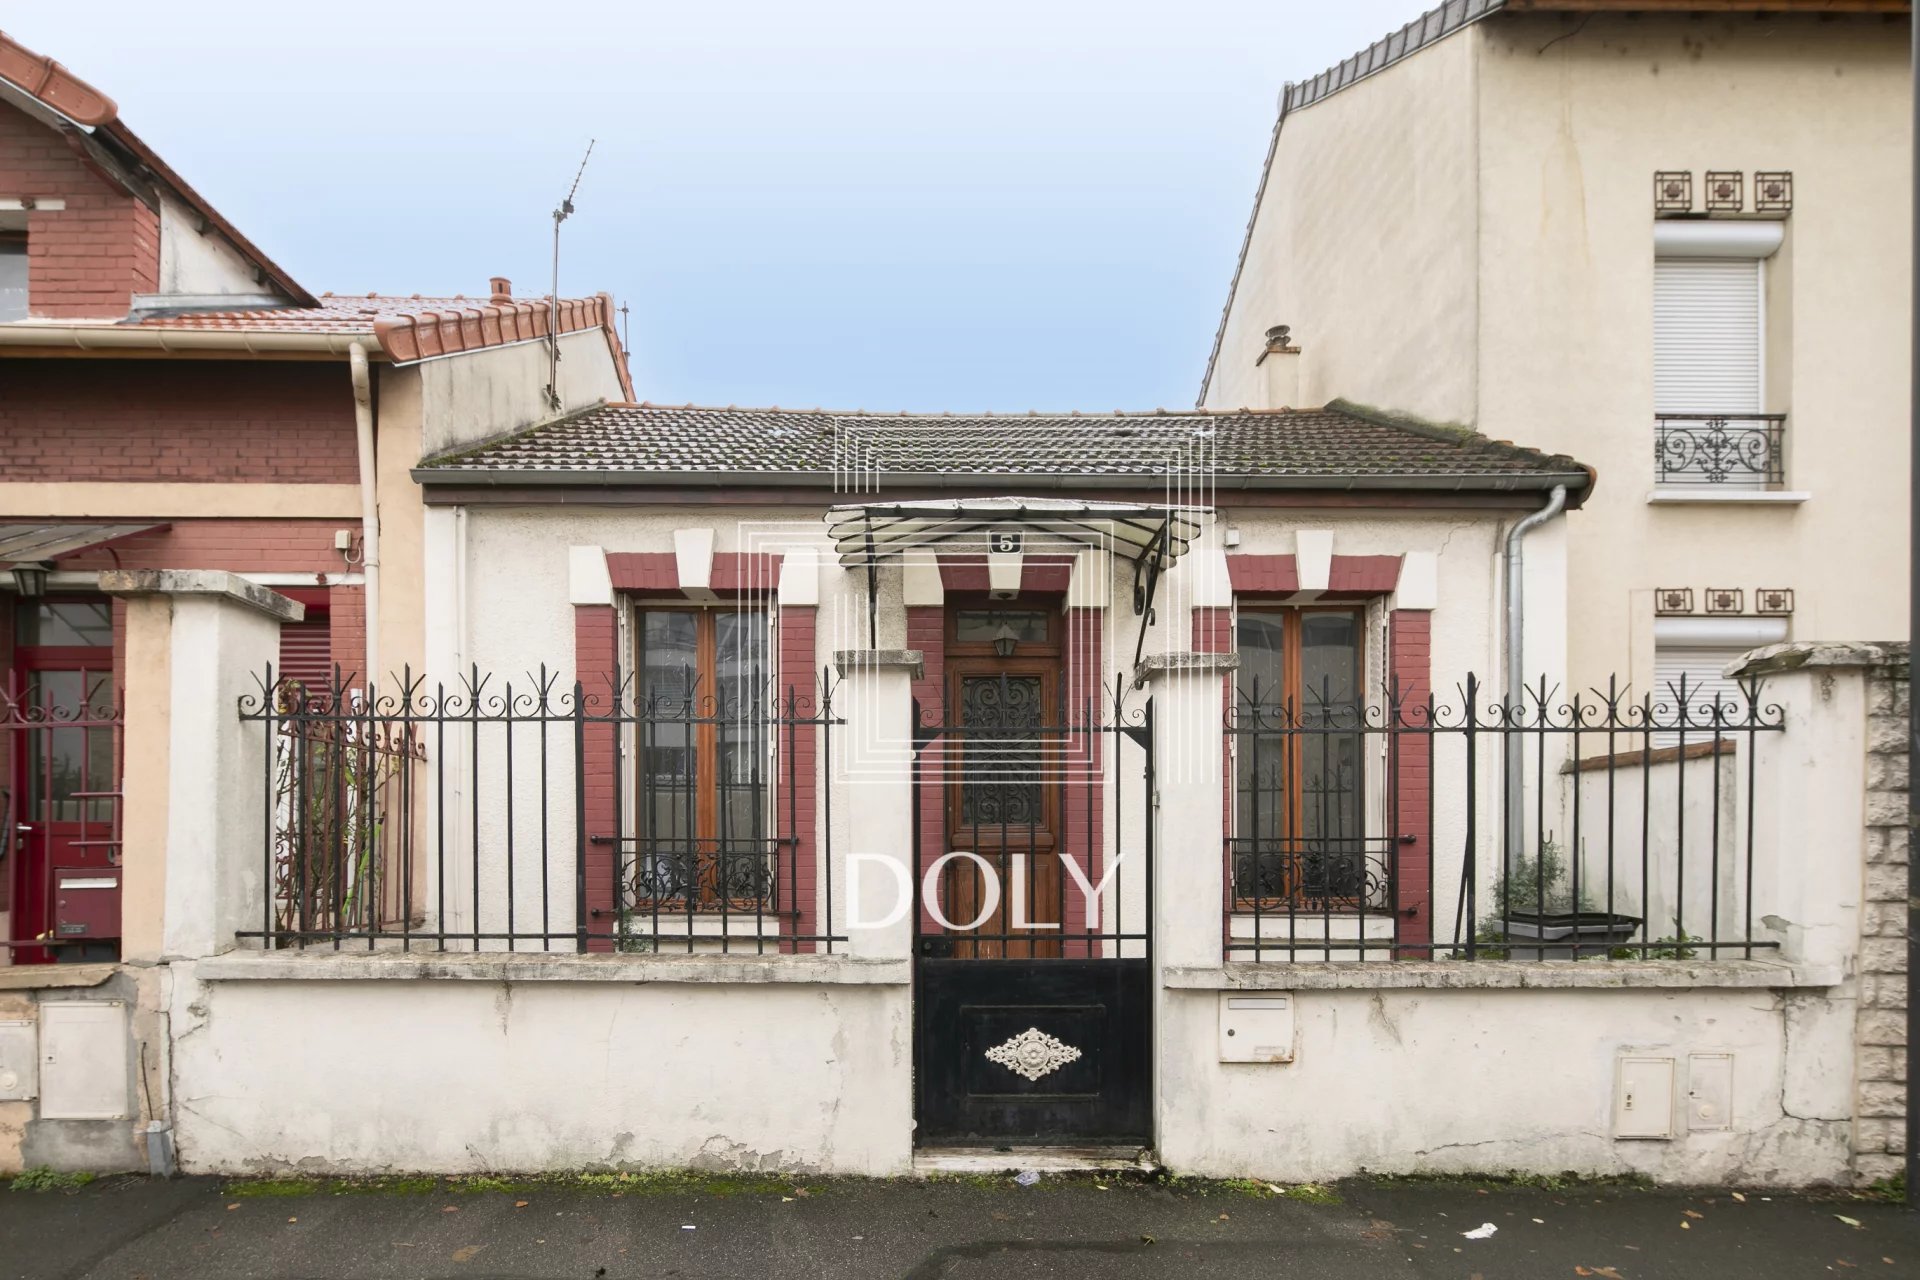 Maison 3 pièces 53m2 // Rue Gustave Simonet // Ivry sur Seine